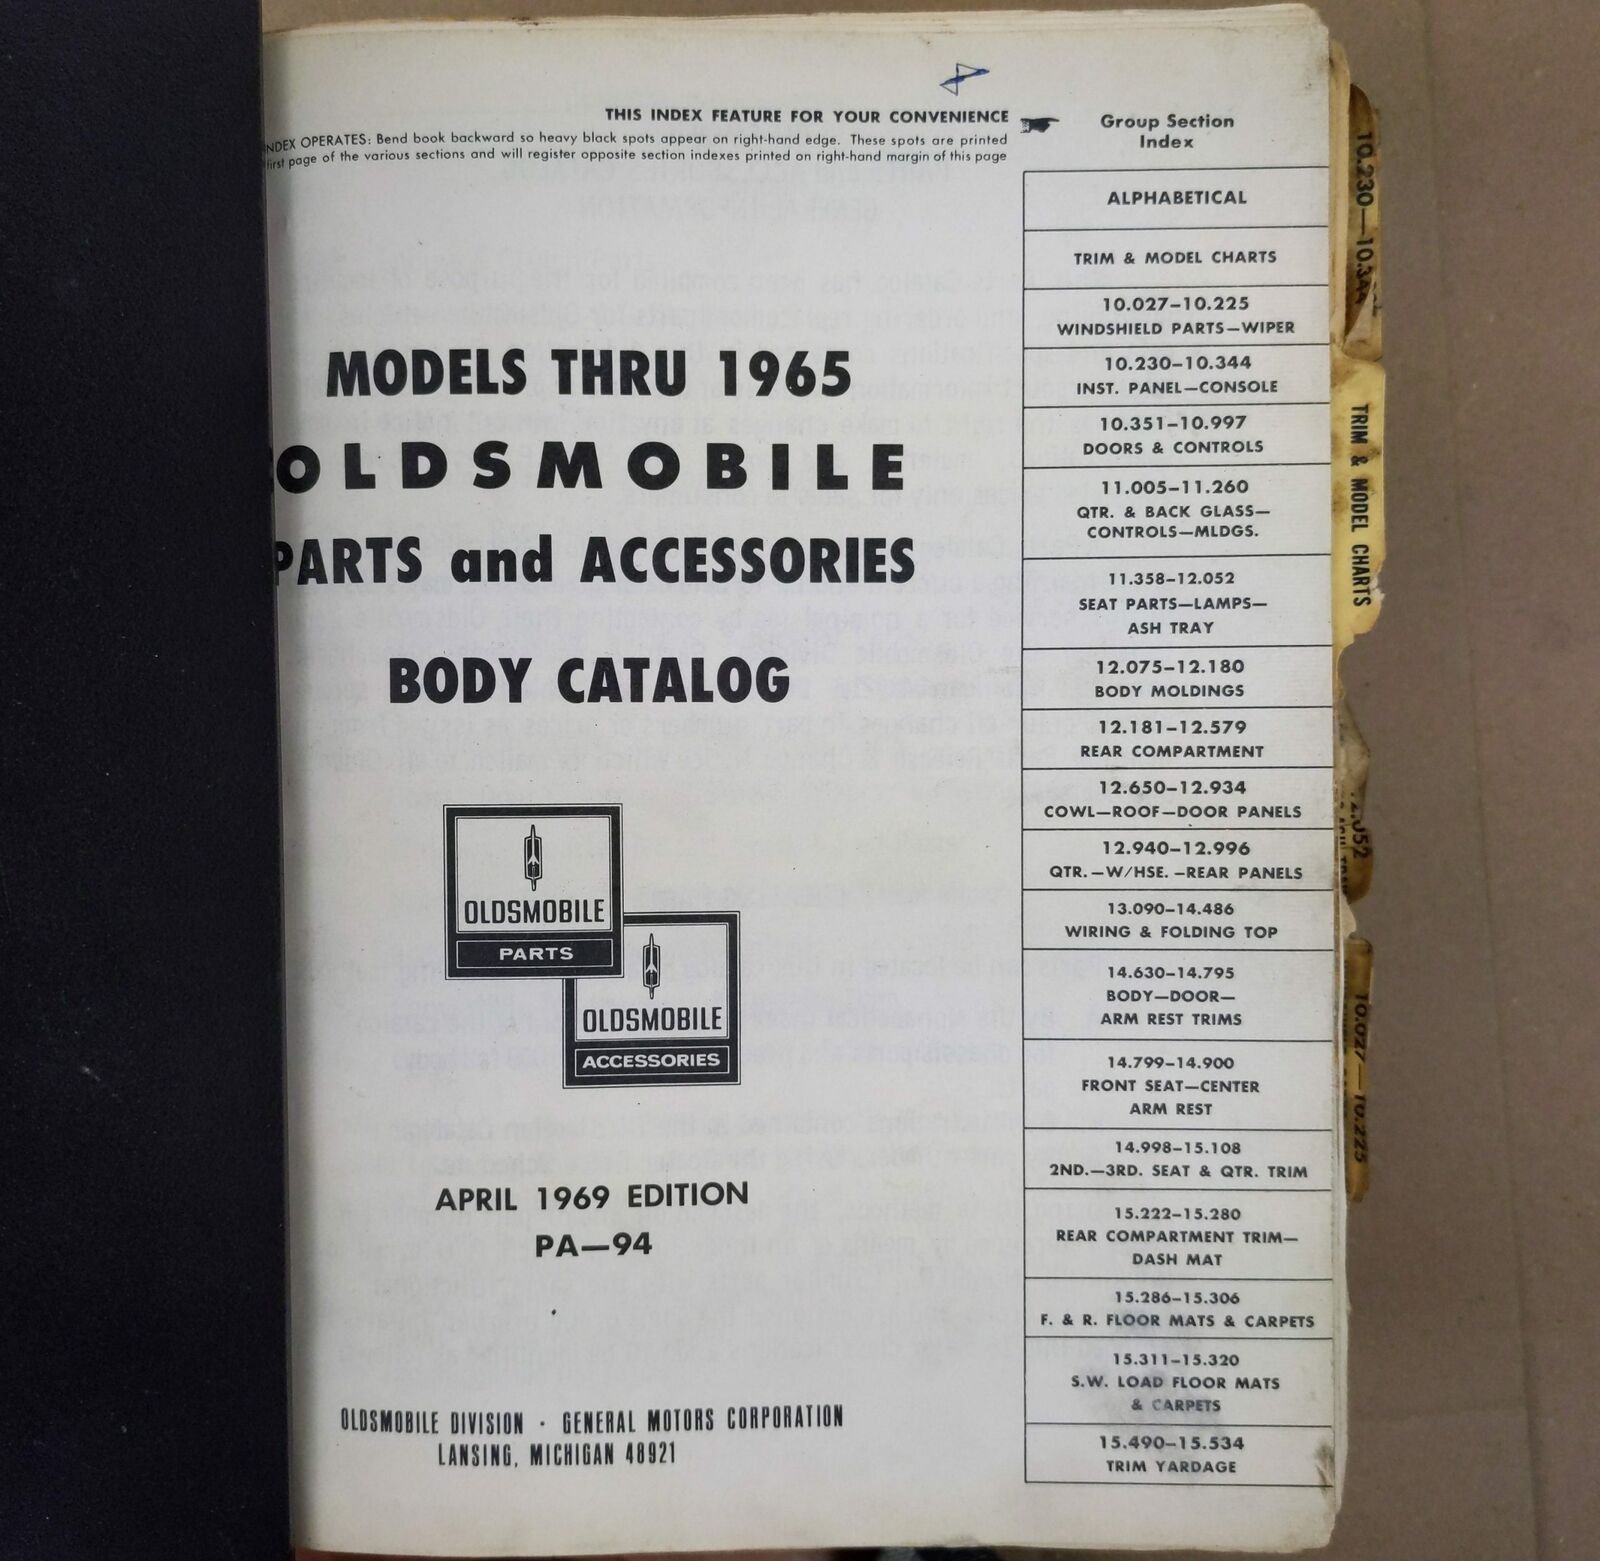 HUGE Vintage OLDSMOBILE Parts and Accessories Catalog ~ MODELS THRU 1965